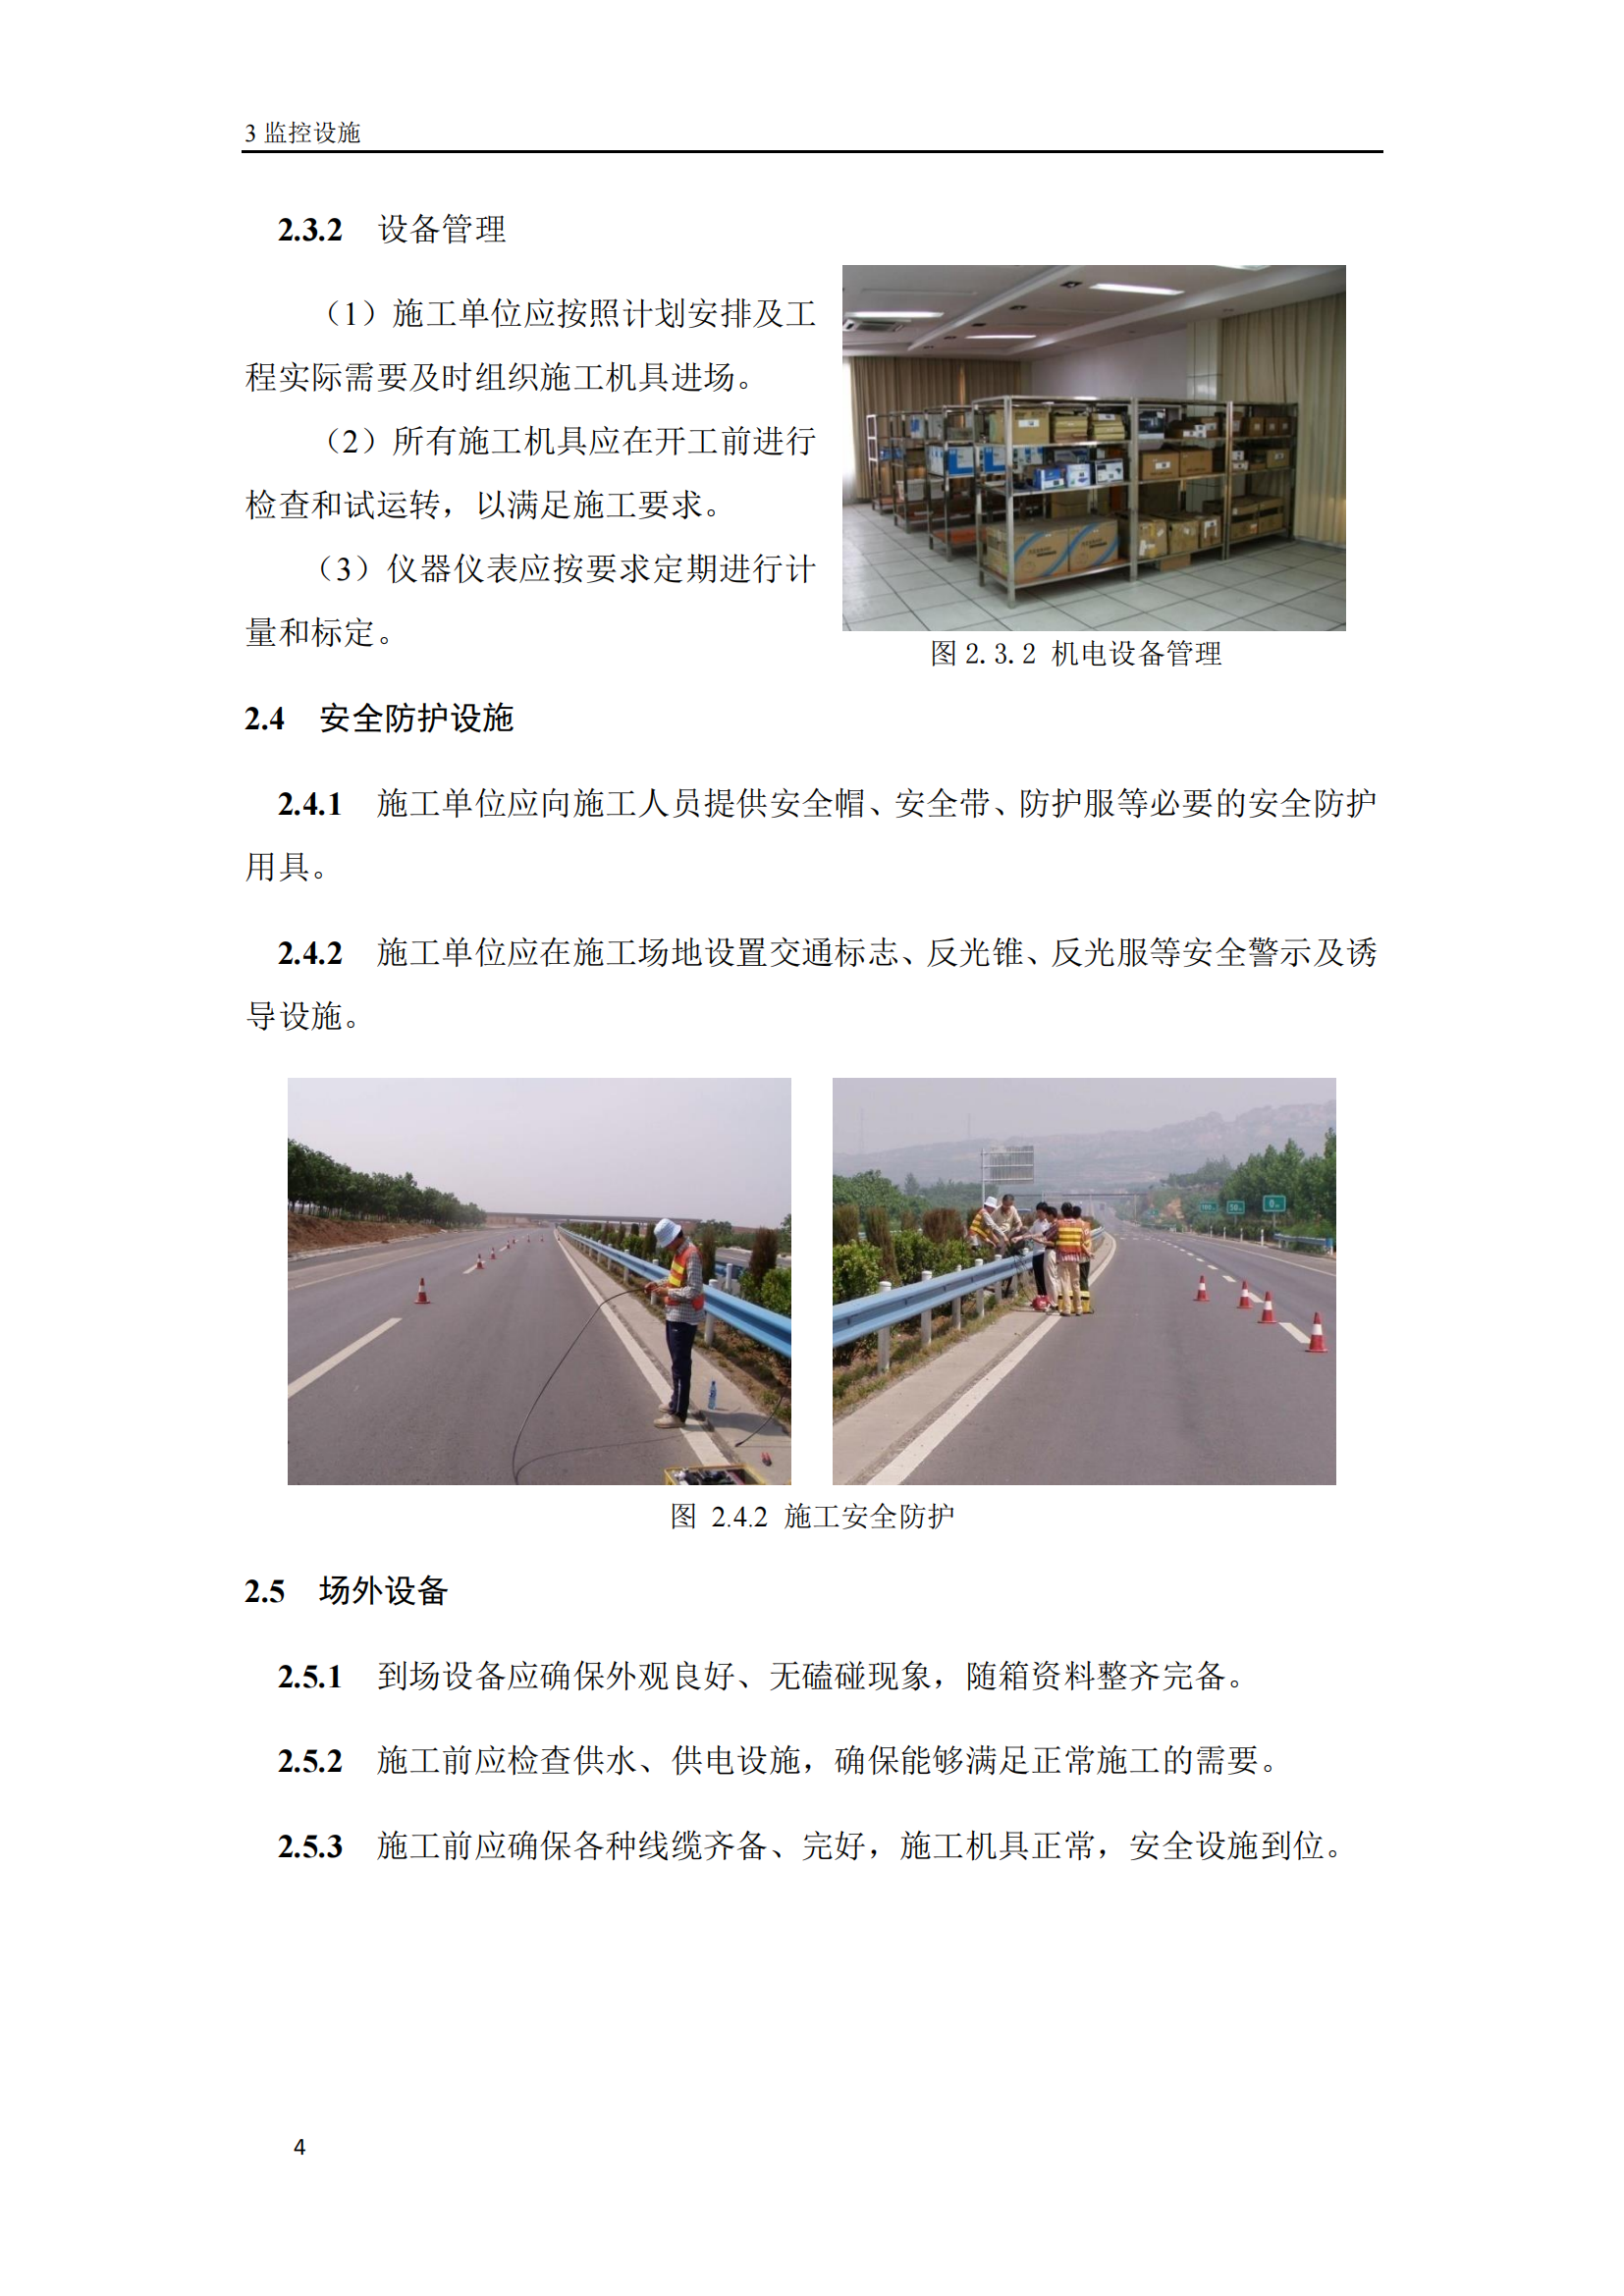 高速公路机电工程施工标准化技术指南插图(6)